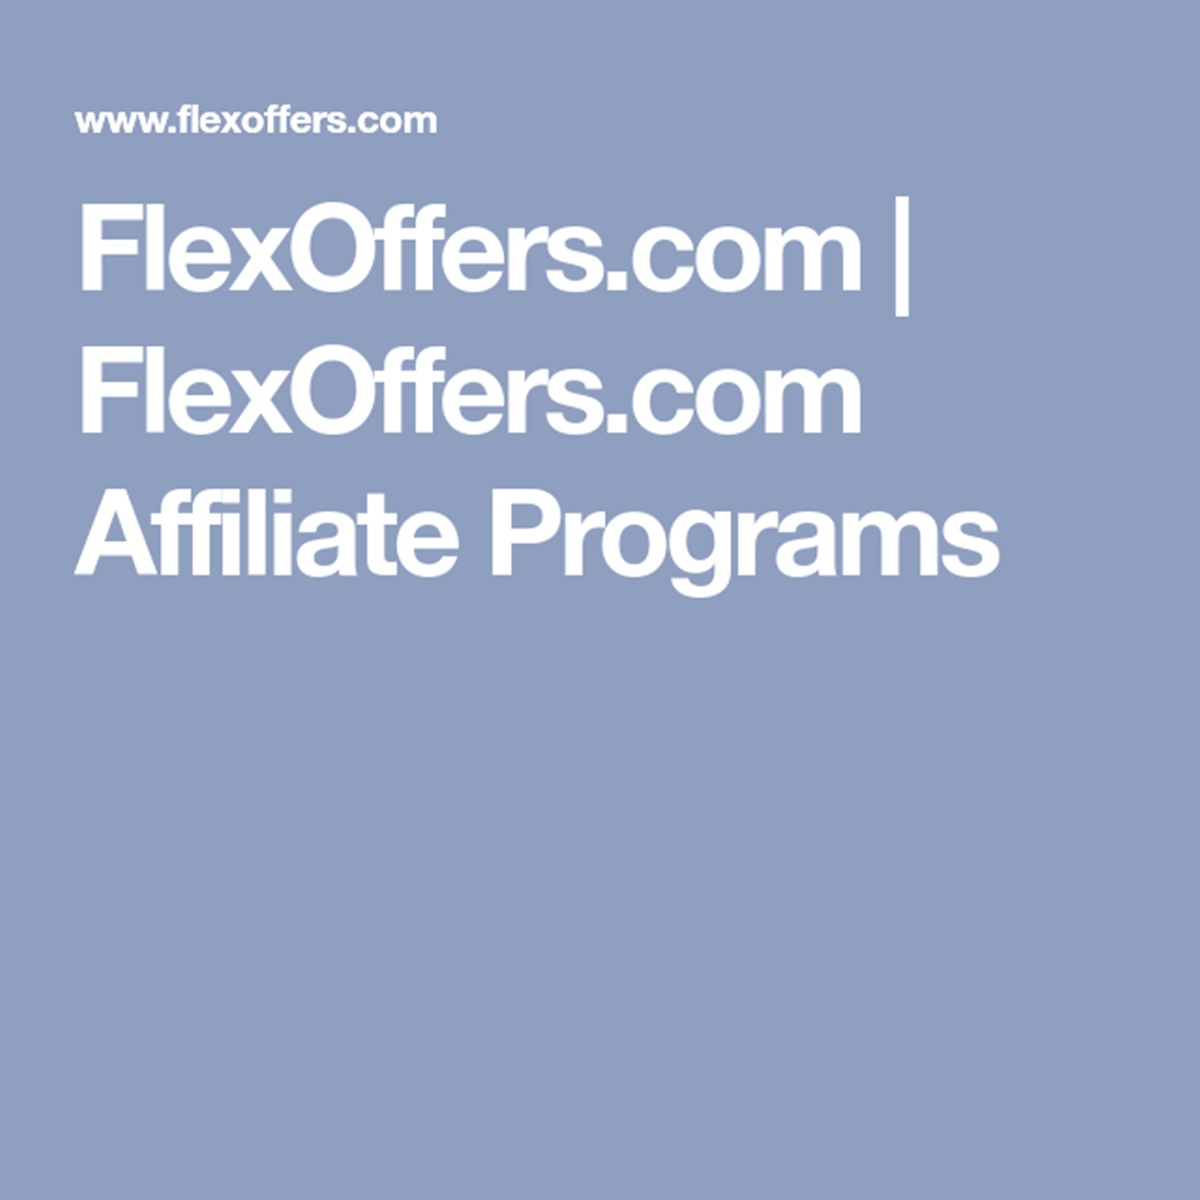 Flex Offers